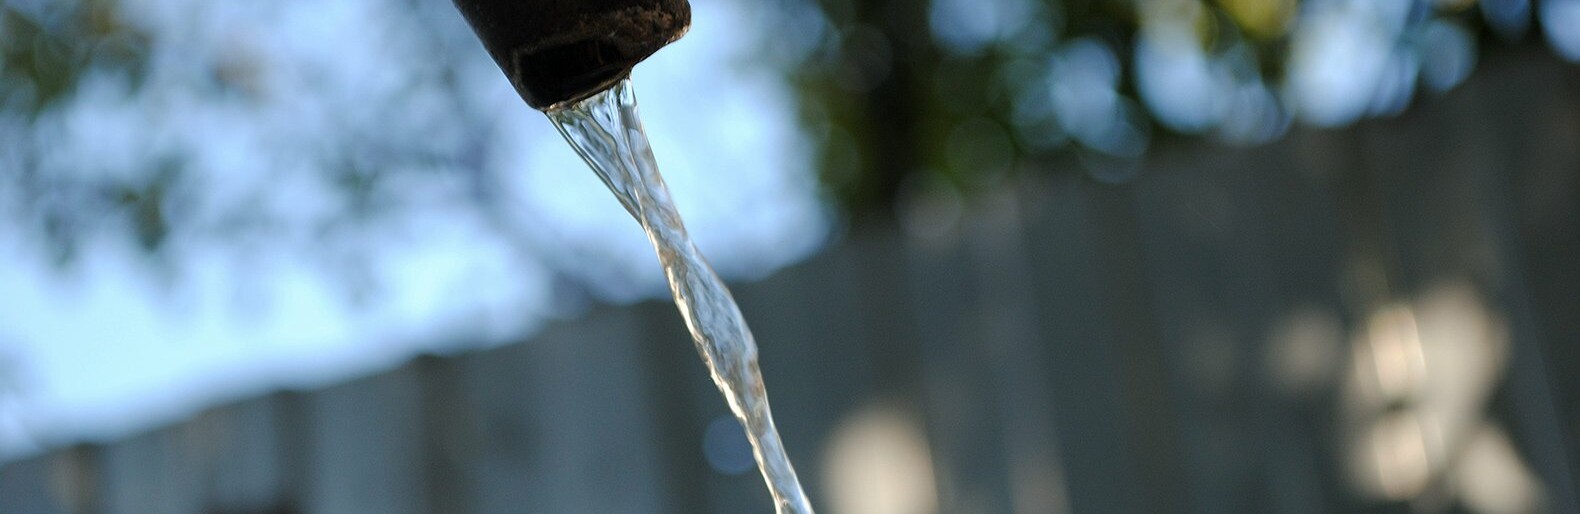 «Цены повышаете, а воды вечером нет». Белгородцы жалуются на проблемы с водоснабжением